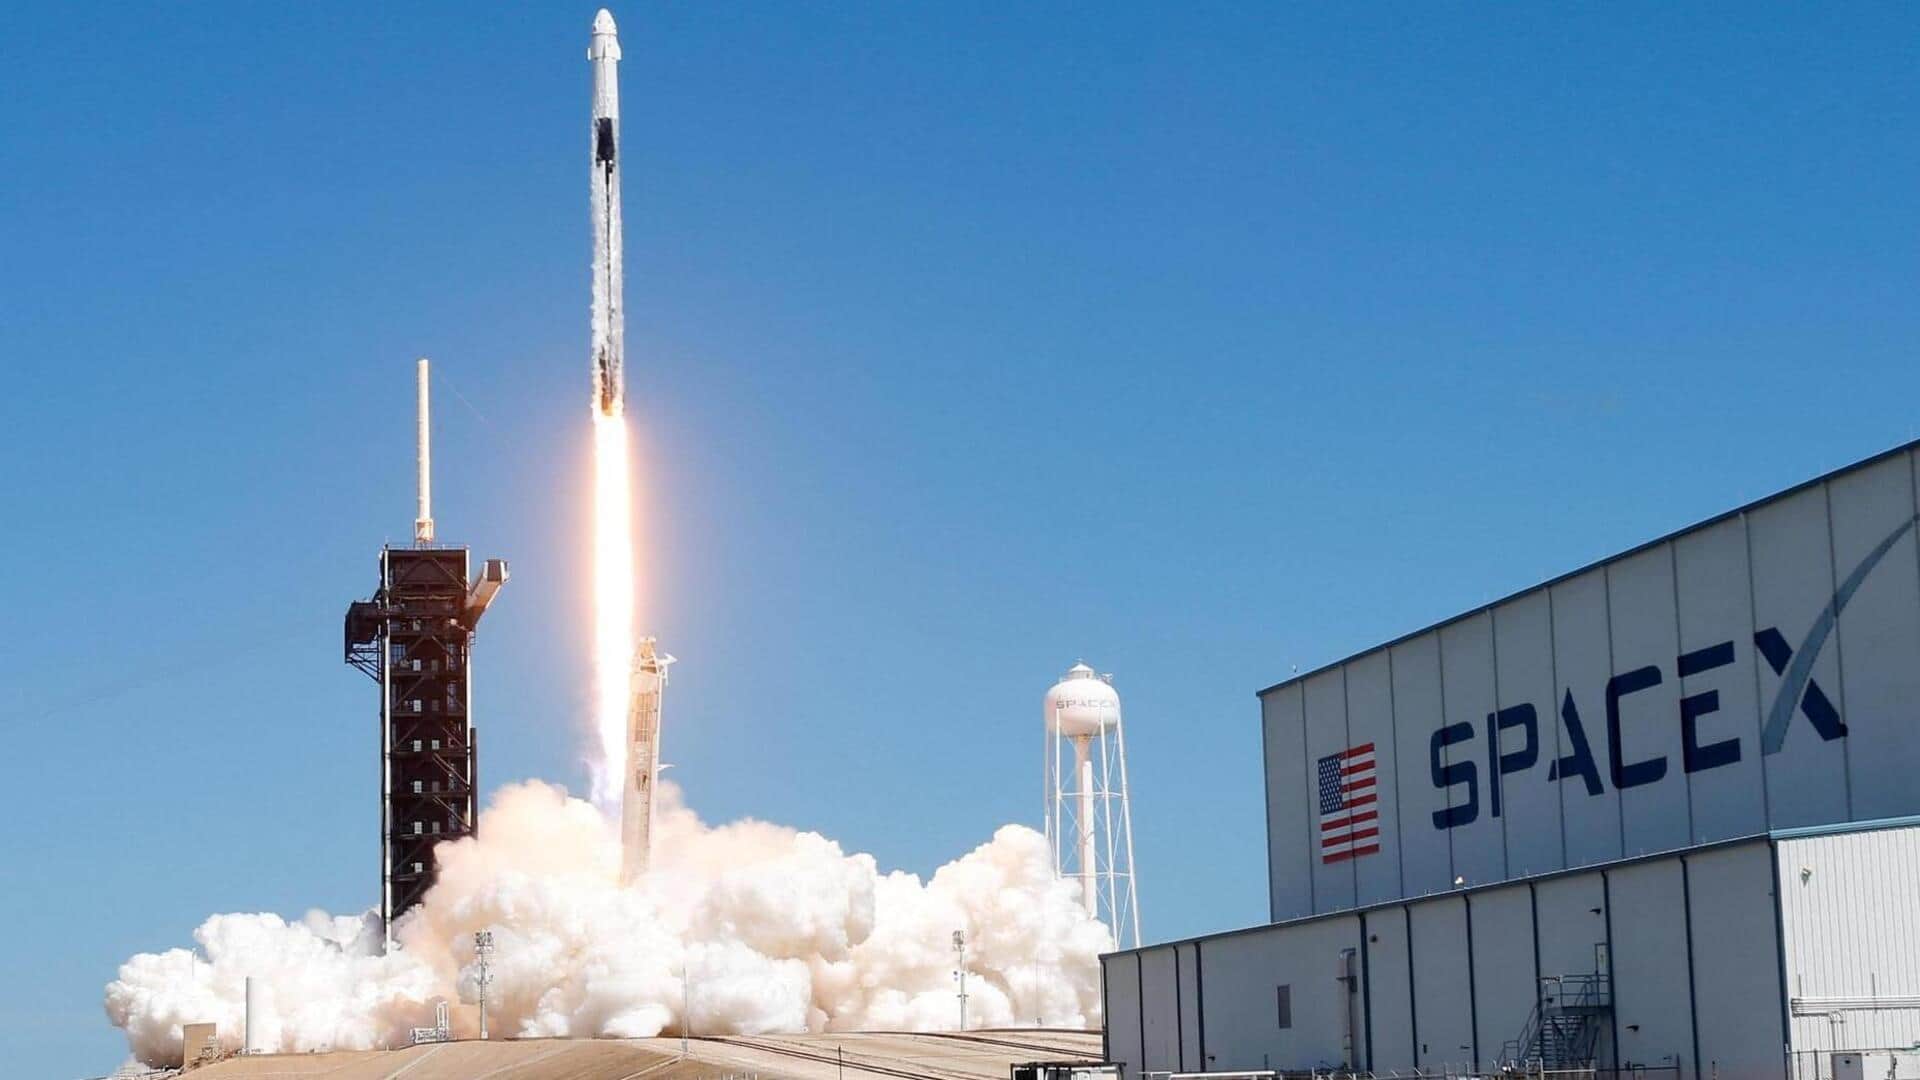 स्पेस-X ने 23 नए स्टारलिंक सैटेलाइट्स किए लॉन्च, अब 4,900 कर रहे काम